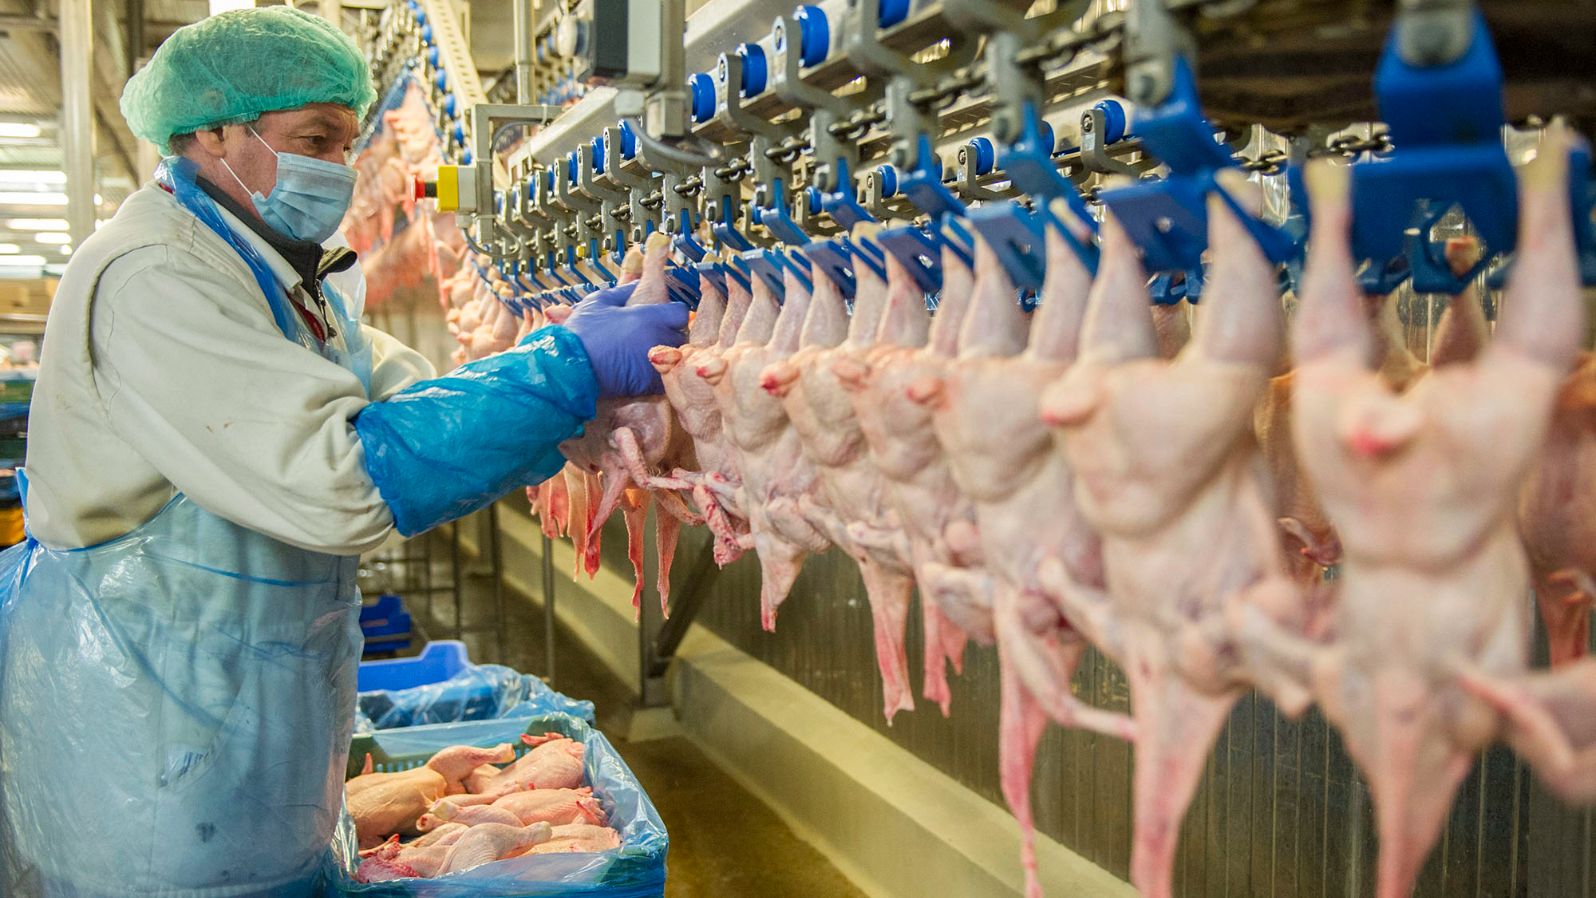 Szentes, 2013. július 25.Csirkéket pakol a Hungerit Zrt. egyik dolgozója a szállítószalagra a cég szentesi üzemében 2013. július 25-én. Ezen a napon a sajtó képviselőinek rendeztek sajtótájékoztatóval egybekötött üzembejárást a Hungerit szentesi központjába. Az 1650 főt foglalkoztató cég évente 110 ezer tonna takarmányt állít elő, 63 ezer tonna szárnyast dolgoz föl, éves árbevétele idén elérheti a 43 milliárd forintot.MTI Fotó: Rosta Tibor